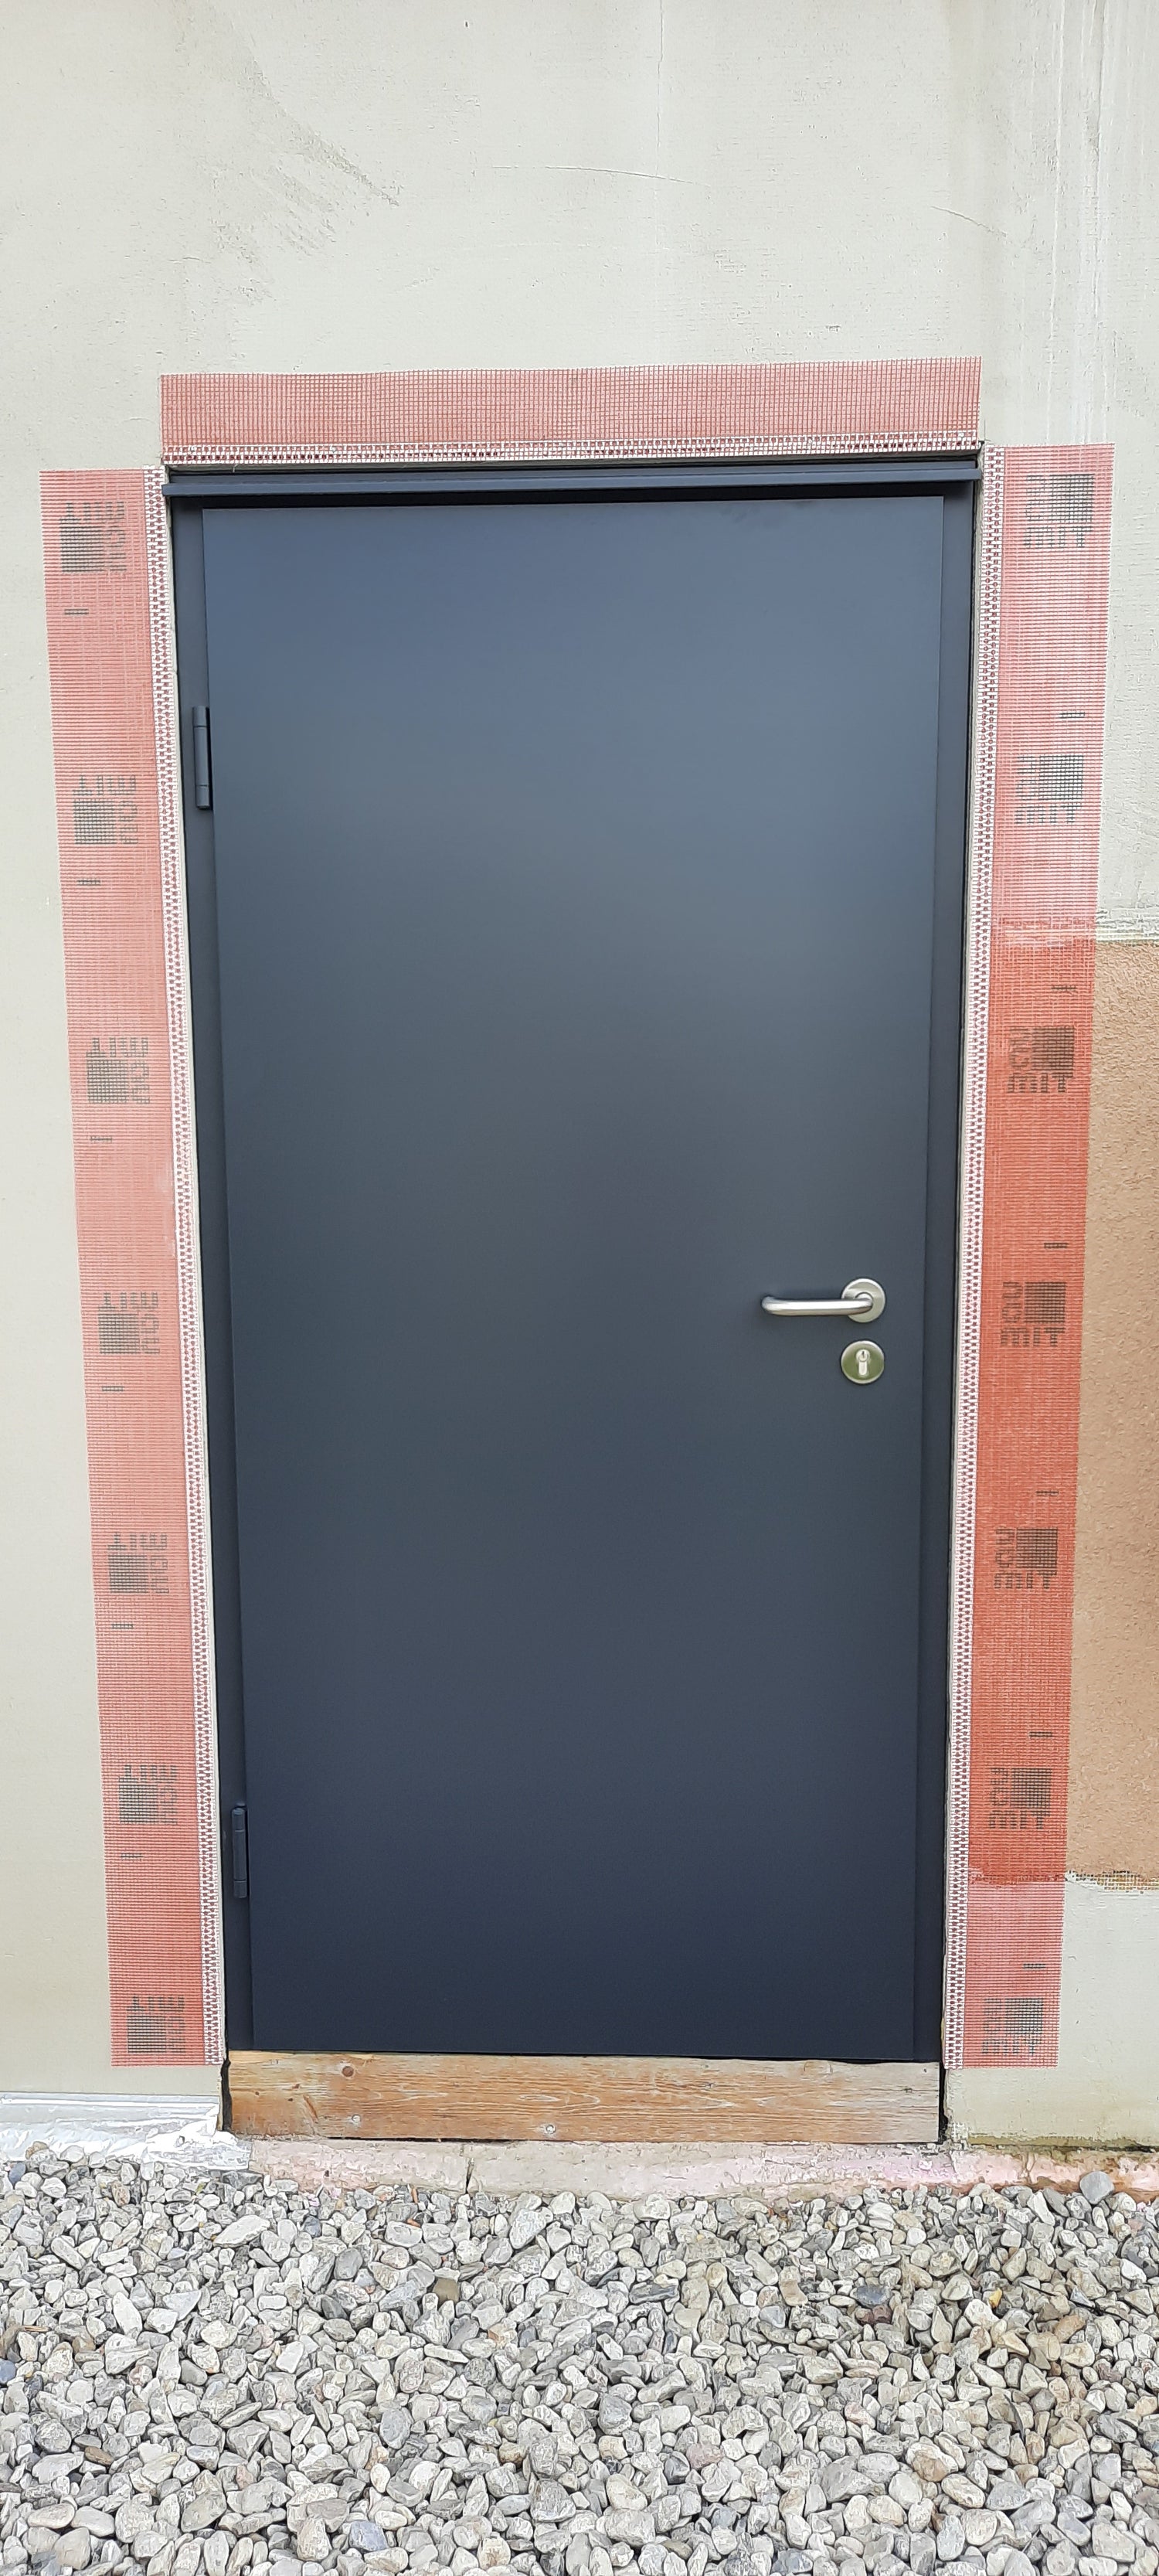 Brandschutztür Stahltür Außentür mit Wetterschenkel in Anthrazitgrau und Edelstahl-Drücker